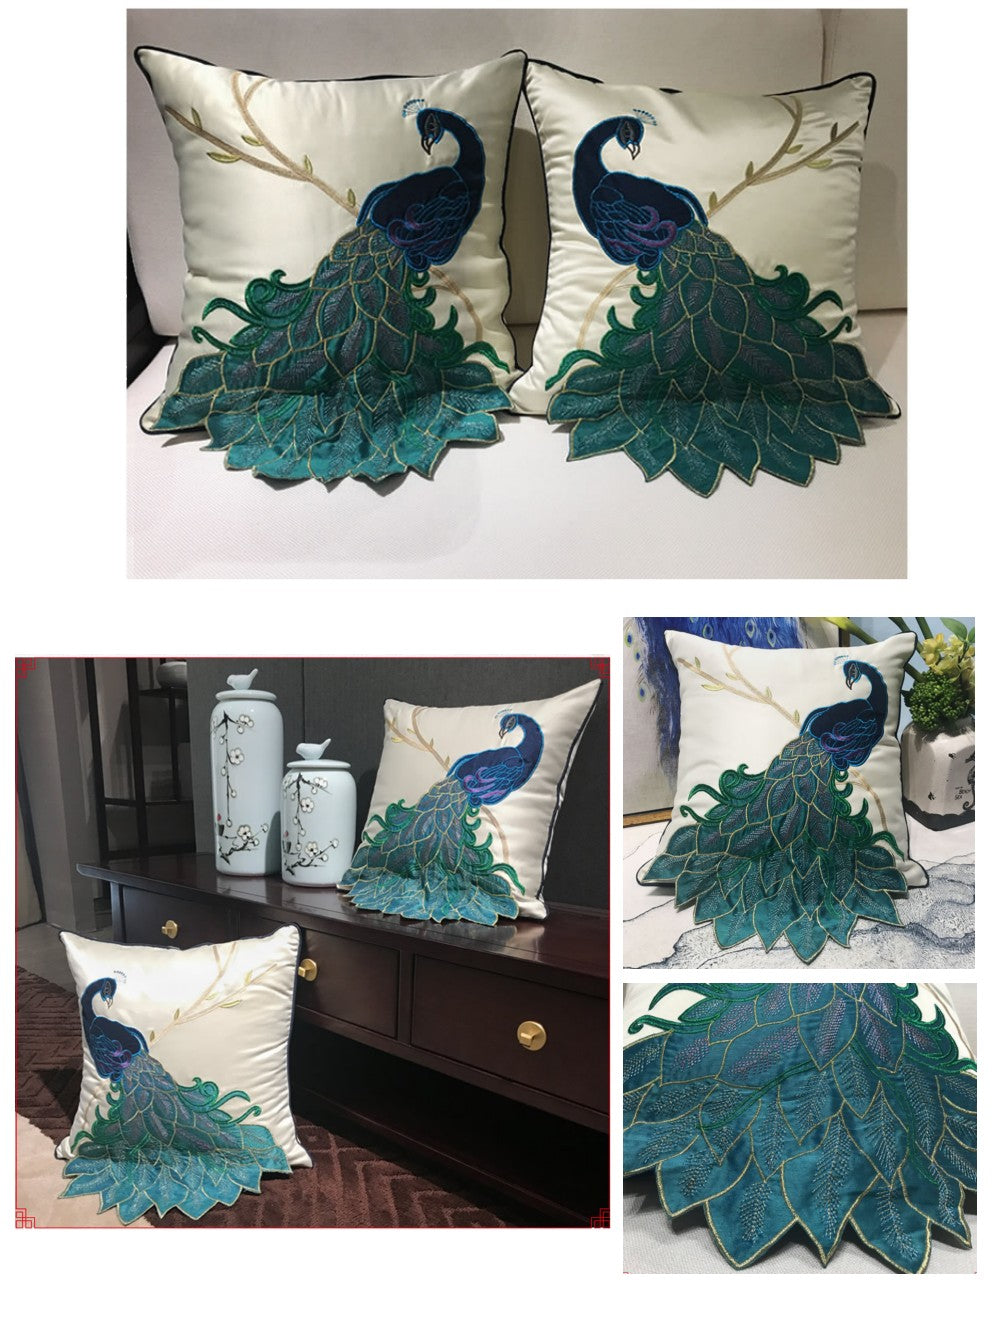 Embroider Peacock Cotton and linen Pillow Cover, Decorative Throw Pillow, Sofa Pillows, Home Decor